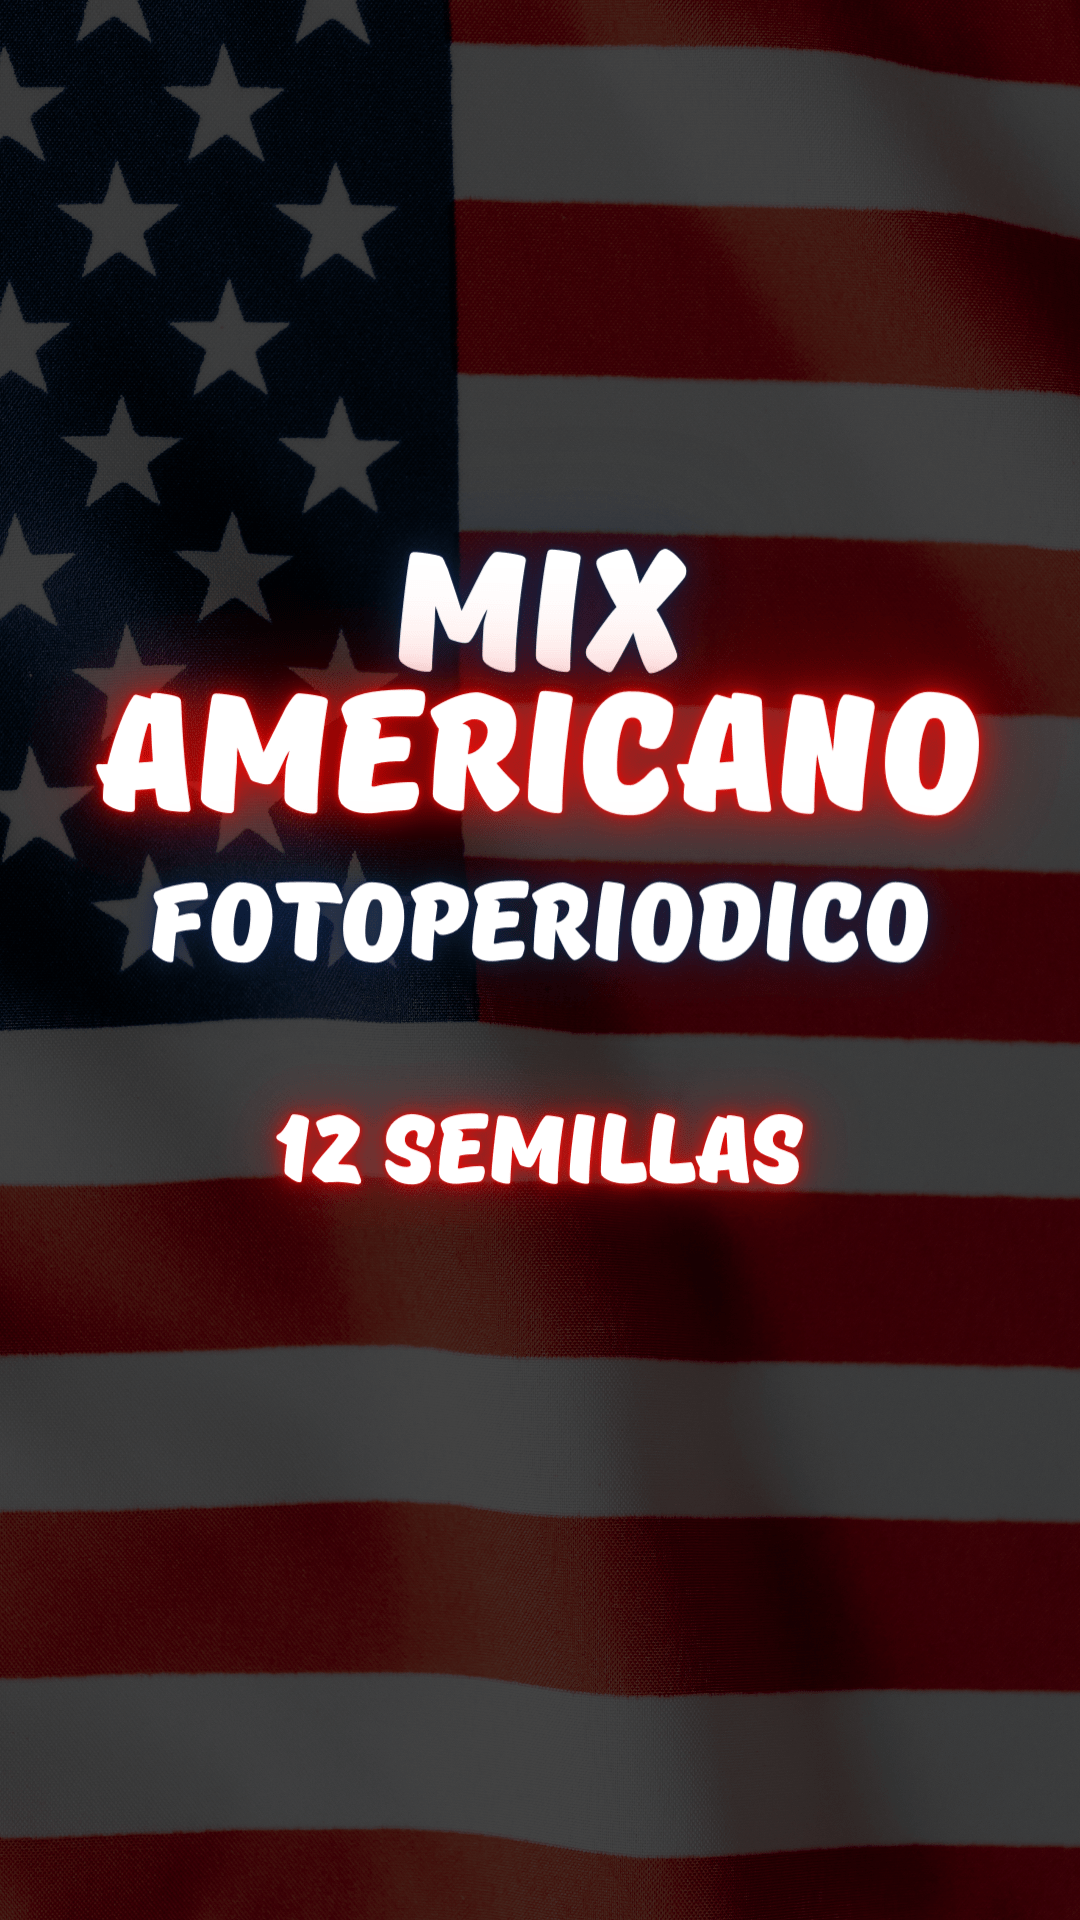 Mix Americano Fotoperiodico